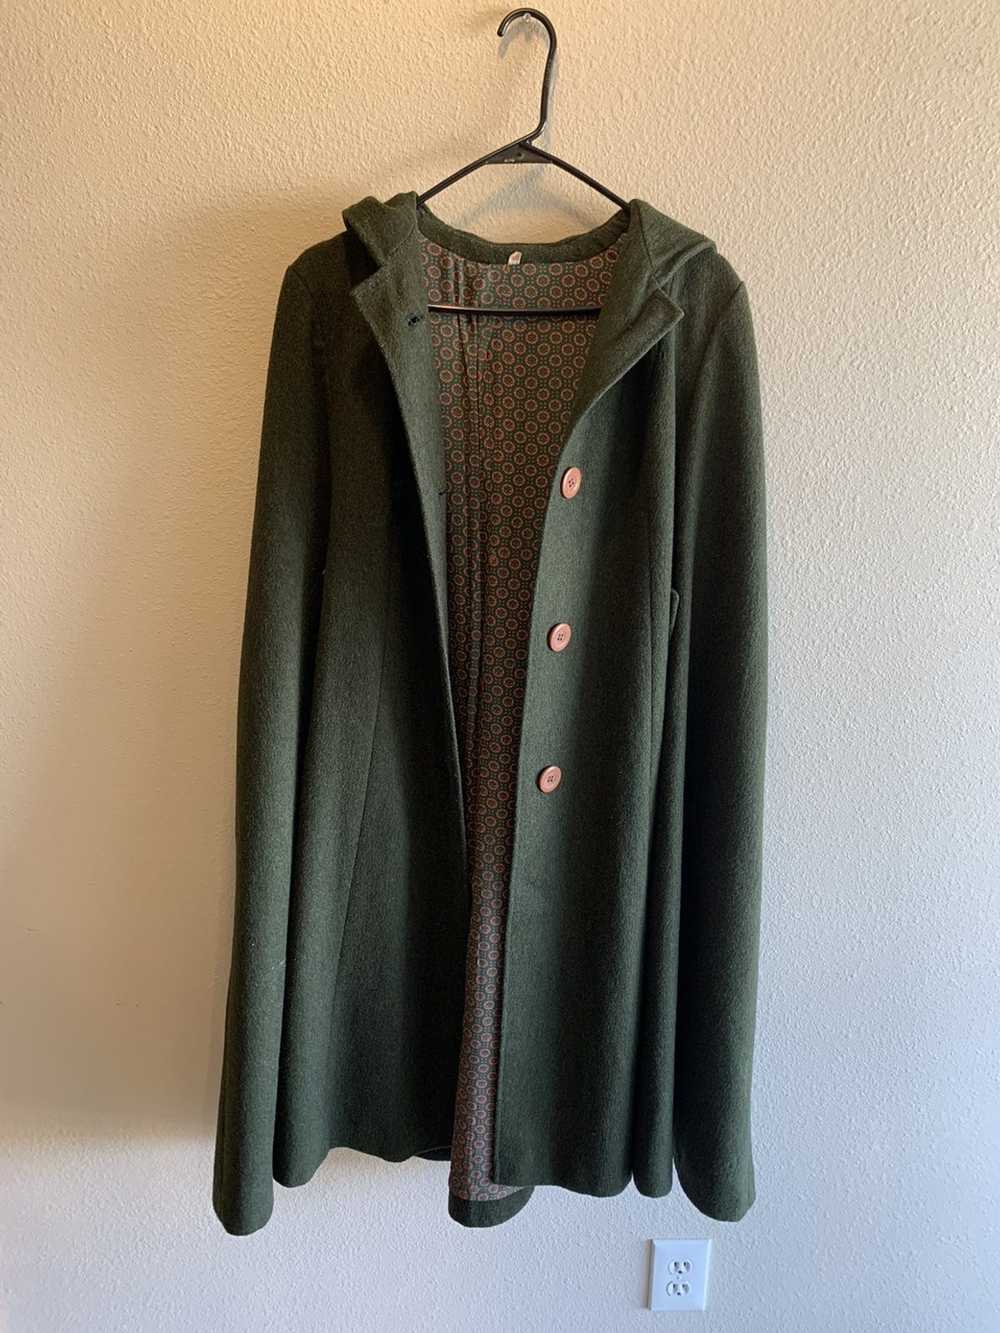 Vintage Jörissen modell hooded cloak - image 1